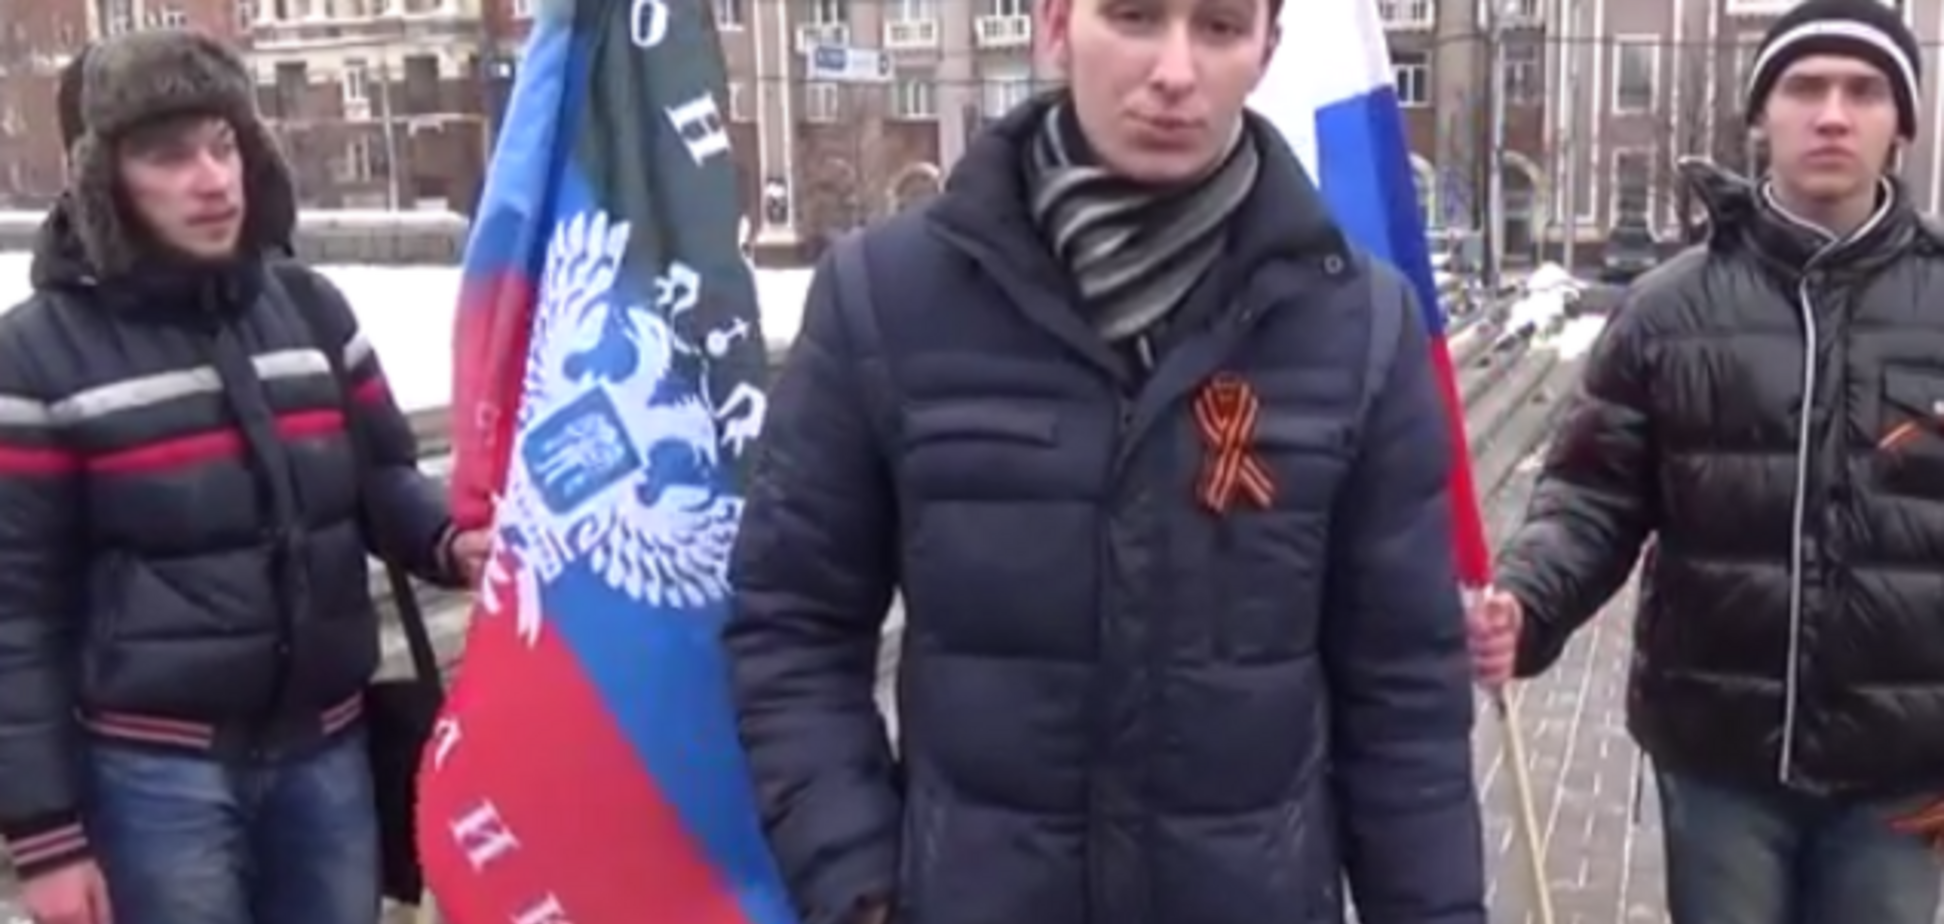 Студенты из Луганска пригрозили установить флаг 'Новороссии' в 'охулившем' Львове: видеообращение